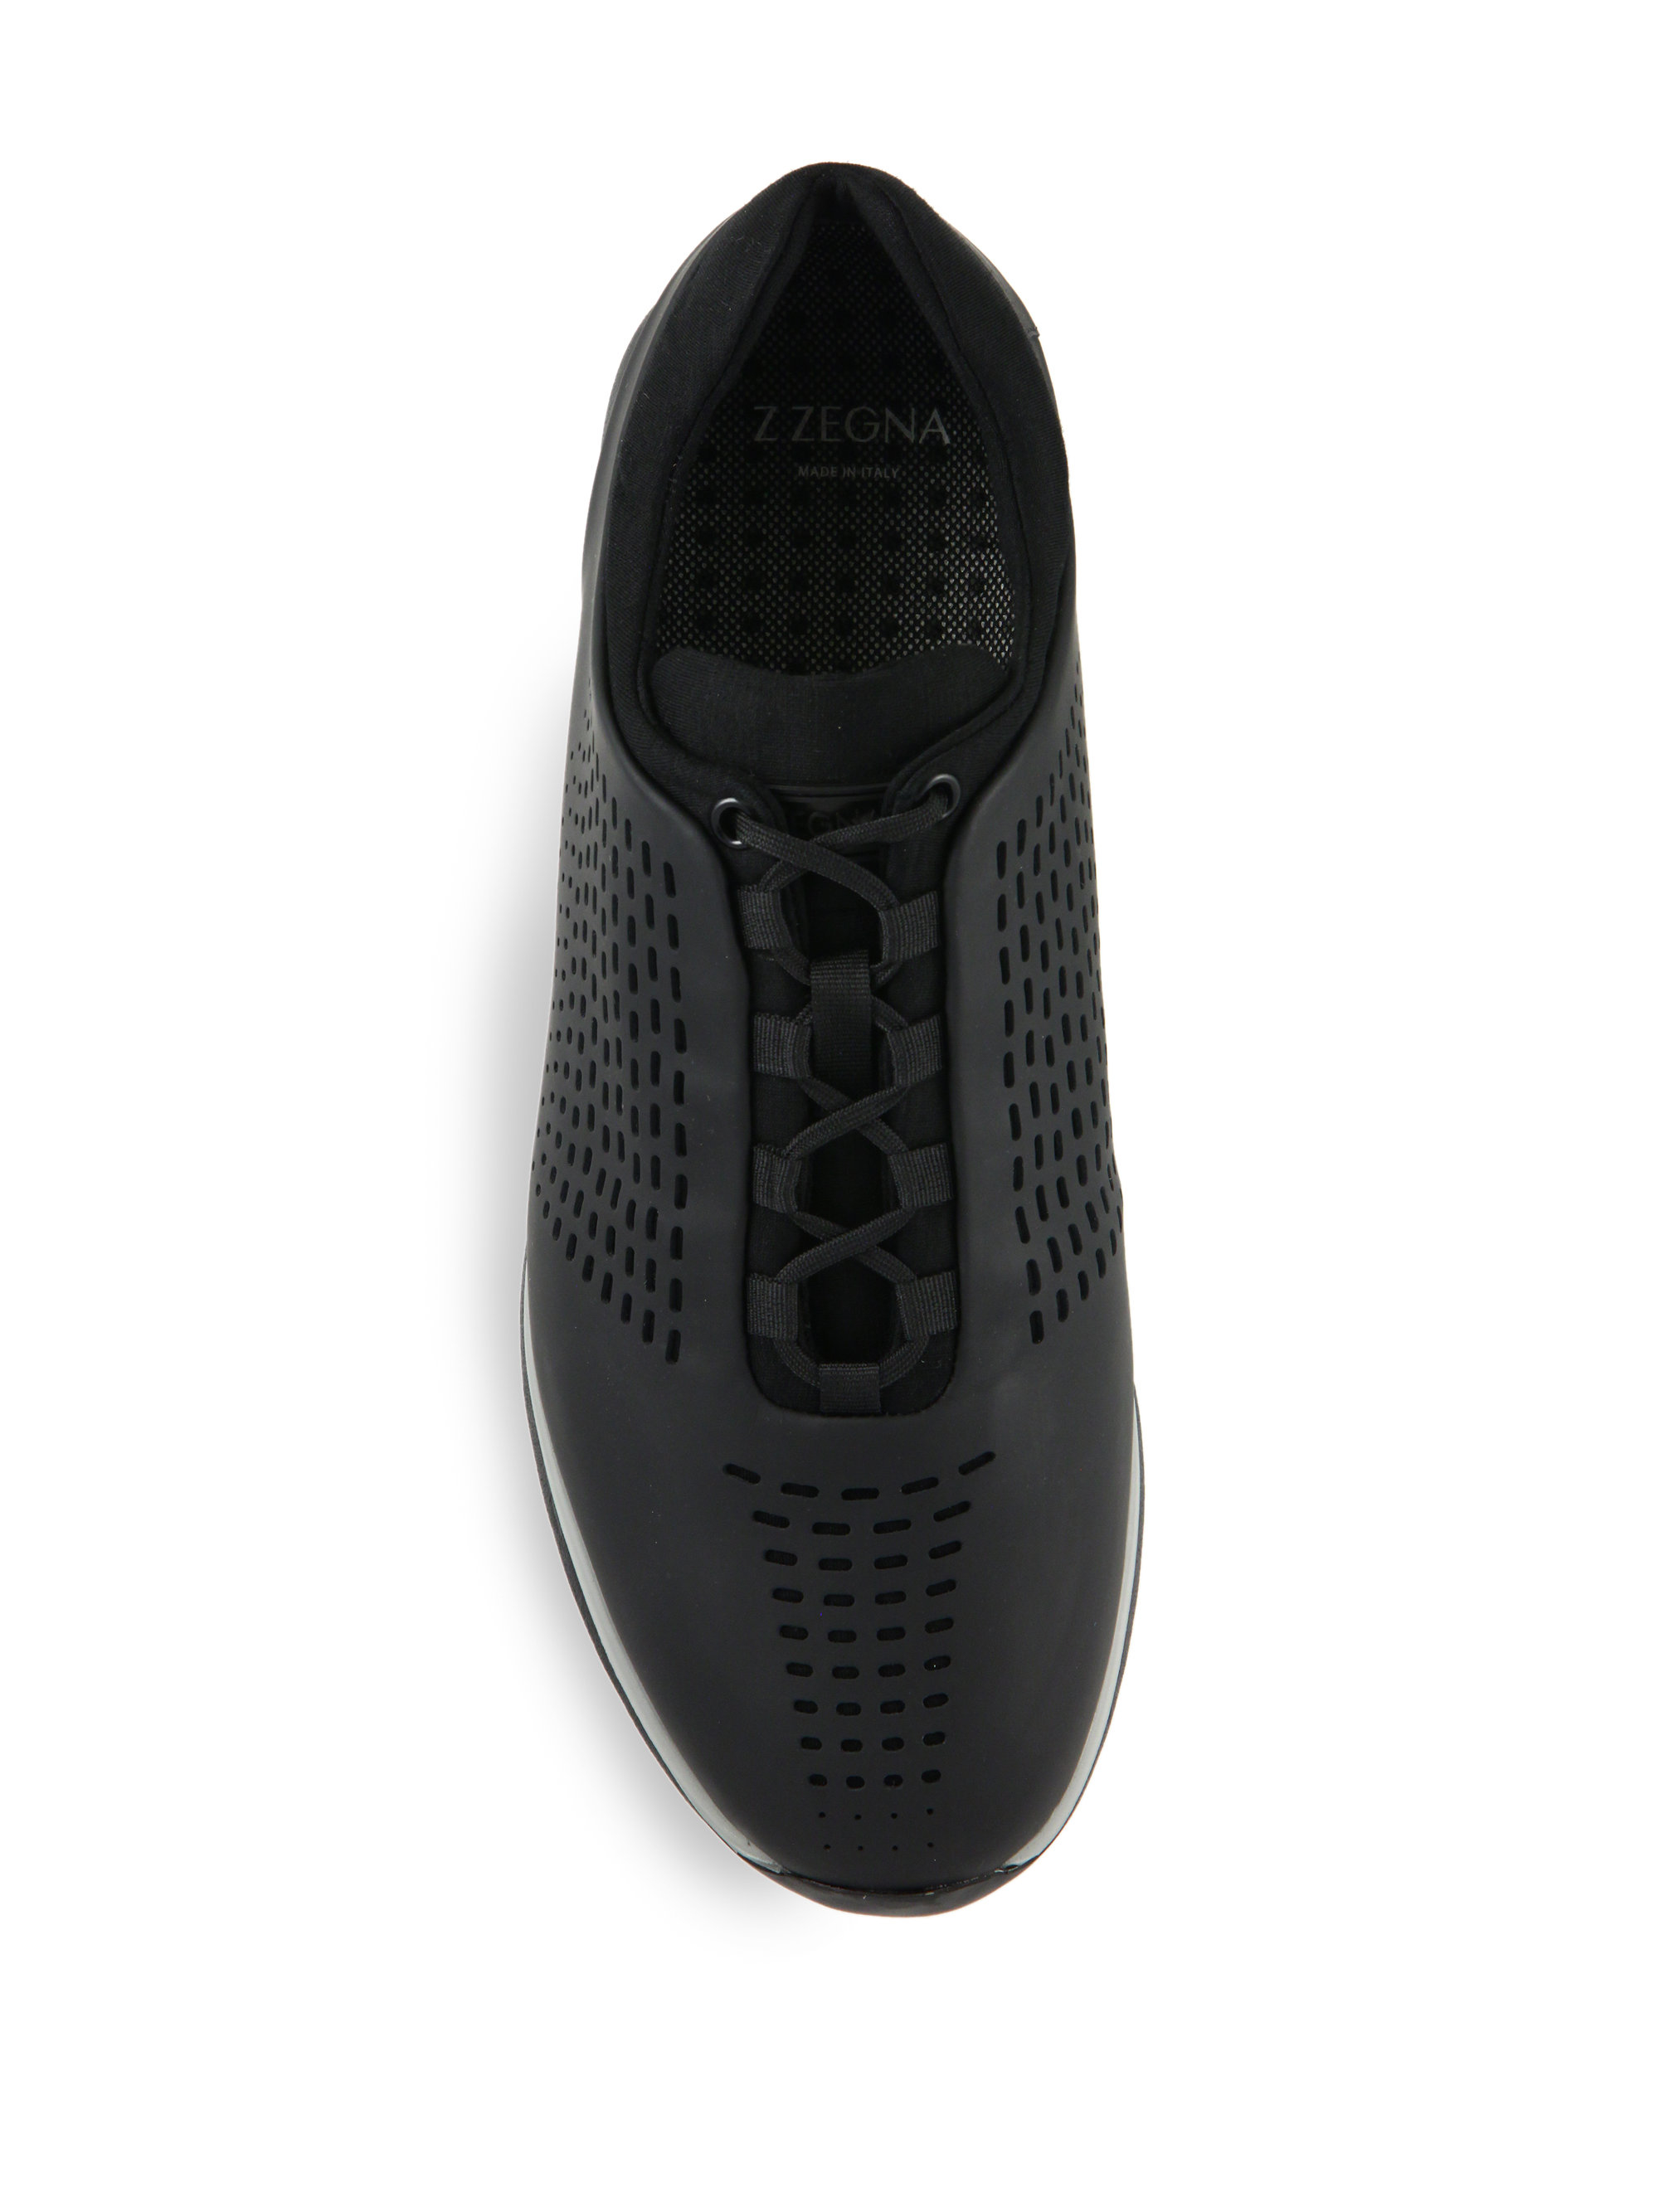 Z Zegna Sprinter Sneakers in Black for Men - Lyst